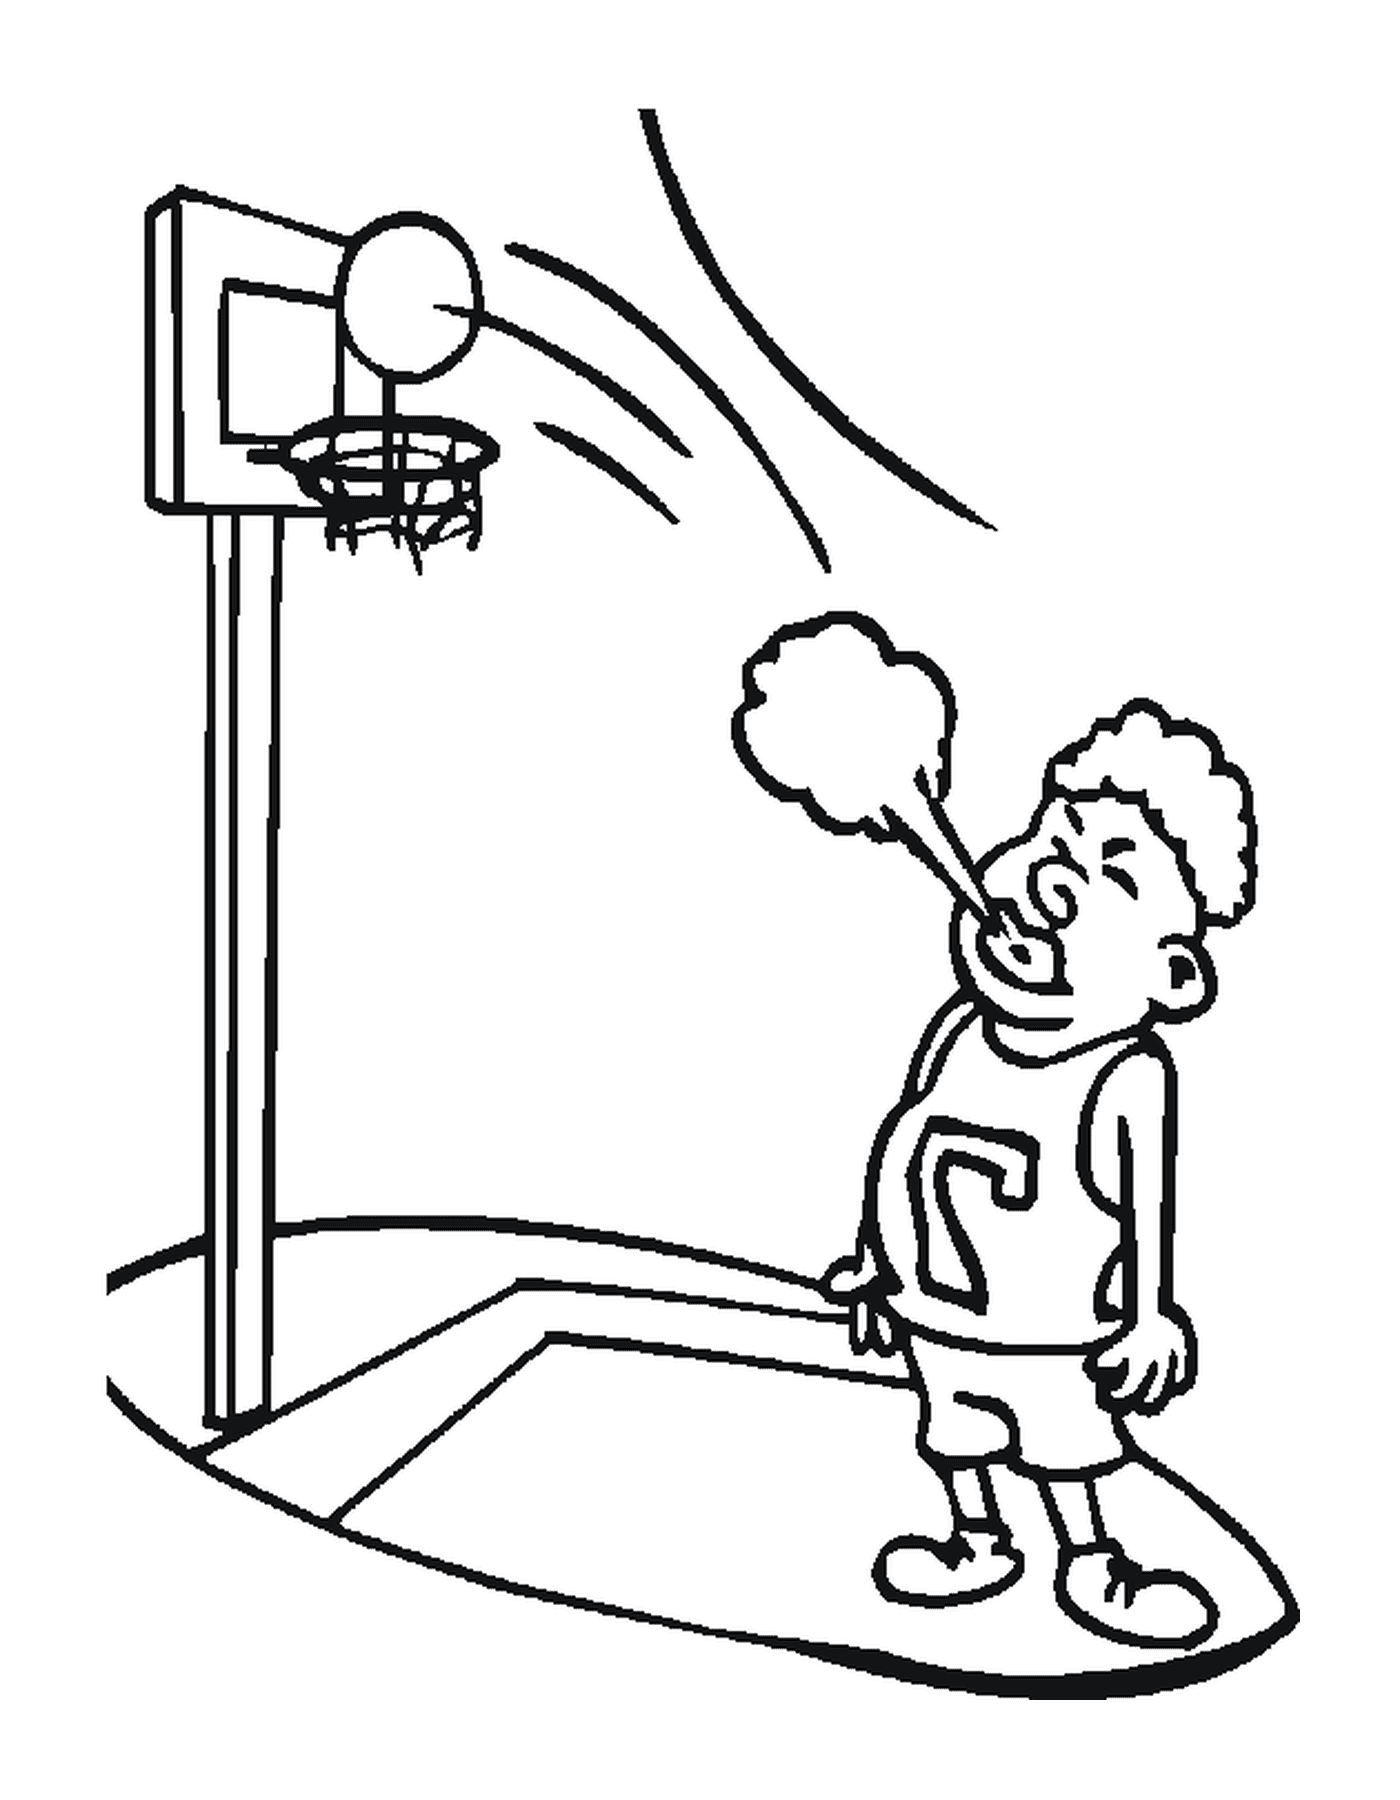  Un jugador de baloncesto sopla 